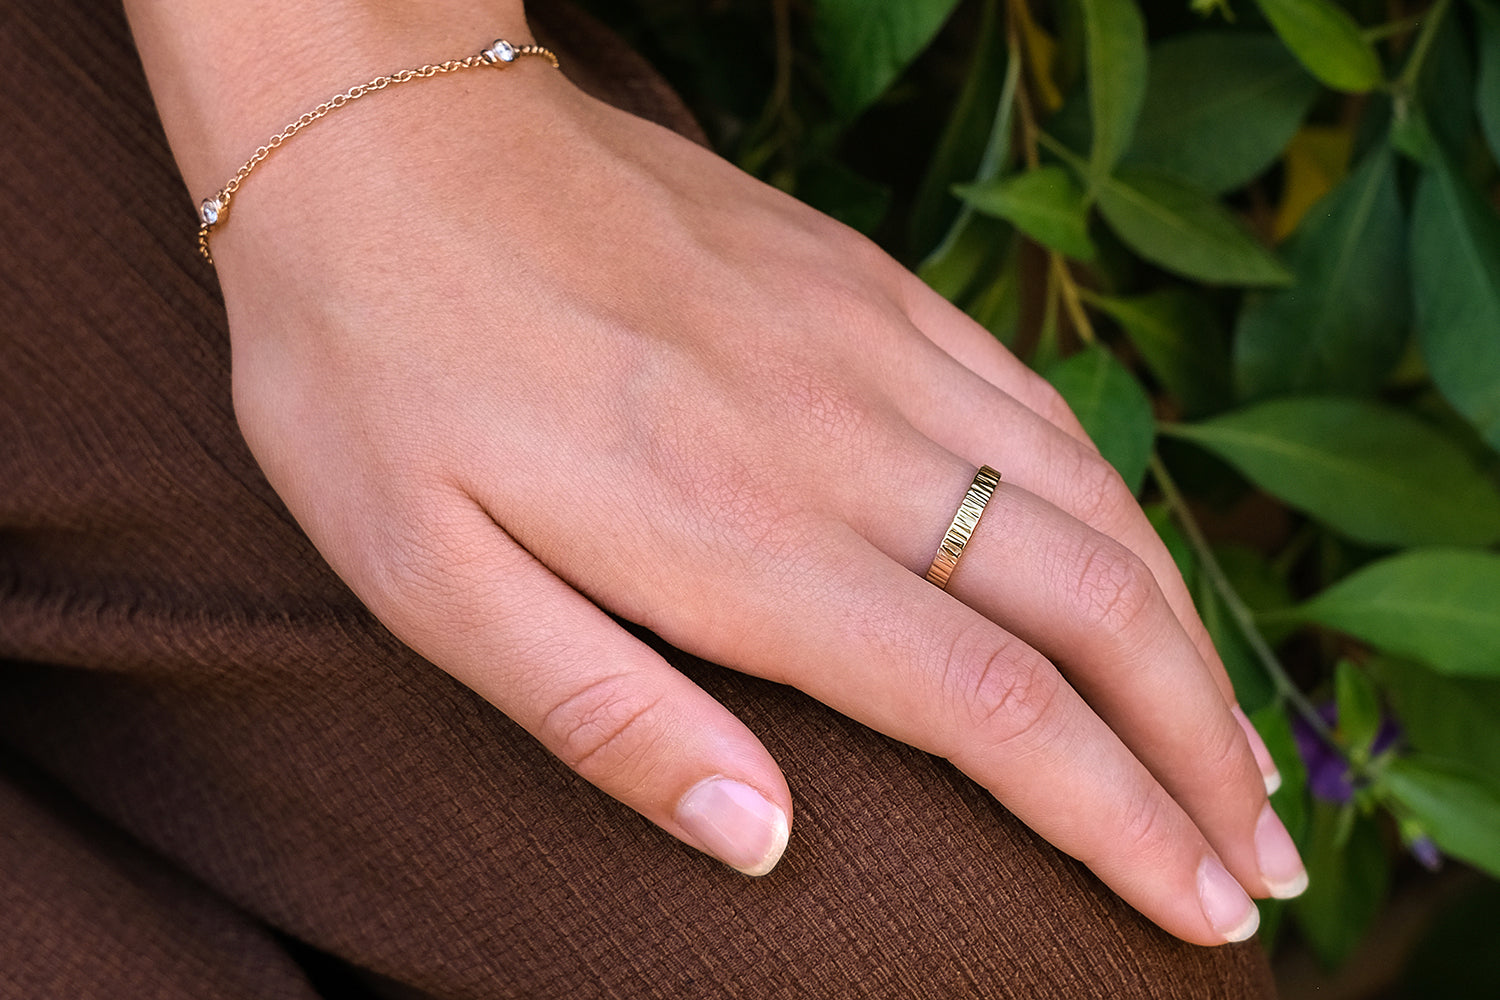 טבעת נישואין זהב בעיצוב גזע עץ 3 מ"מ